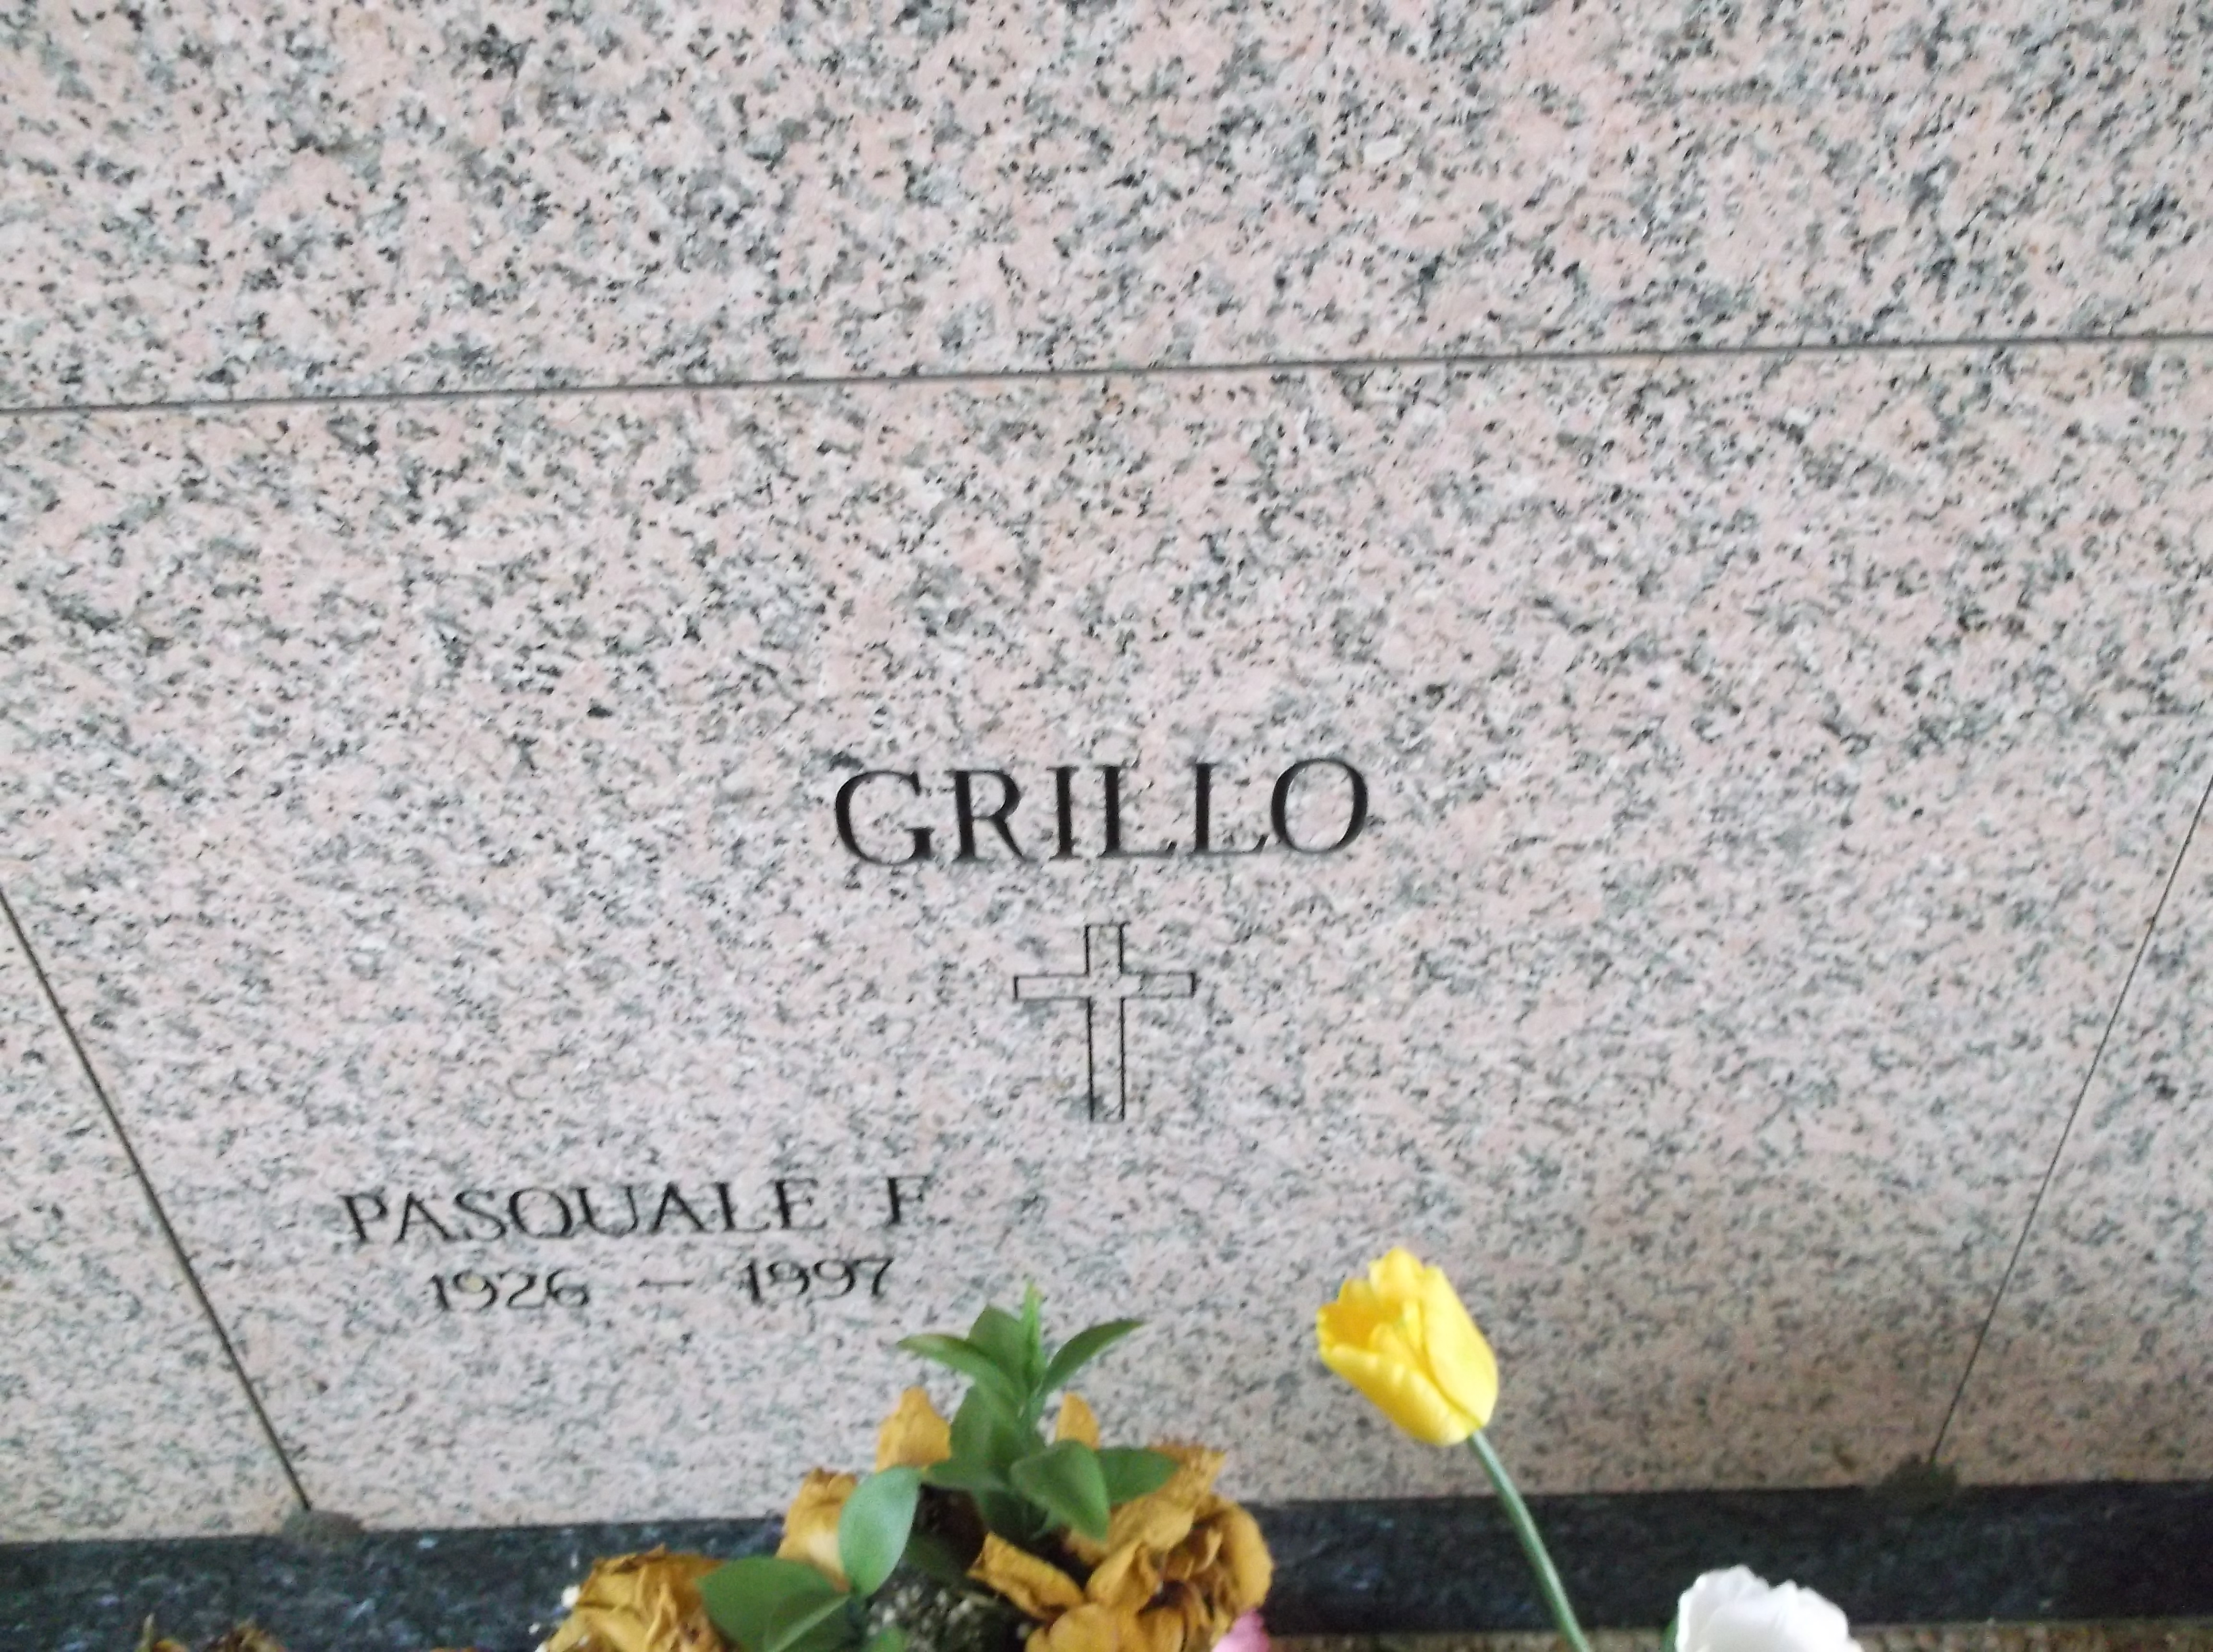 Pasquale F Grillo